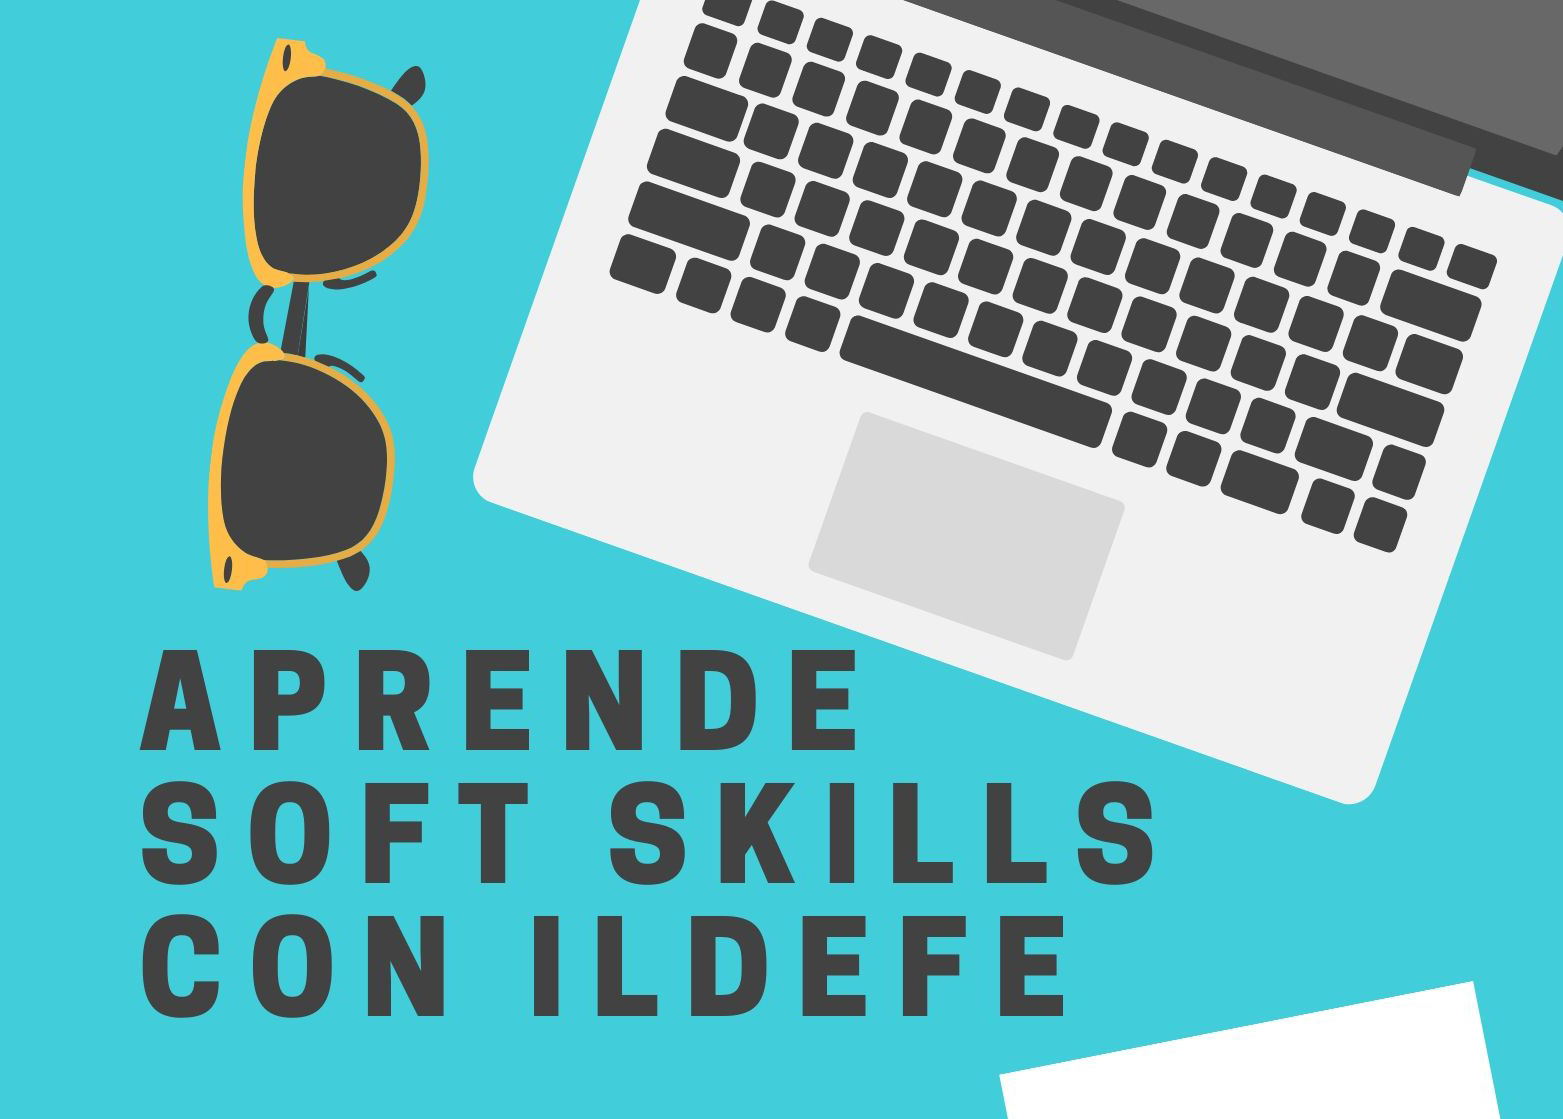 Formación online en soft skills con Ildefe